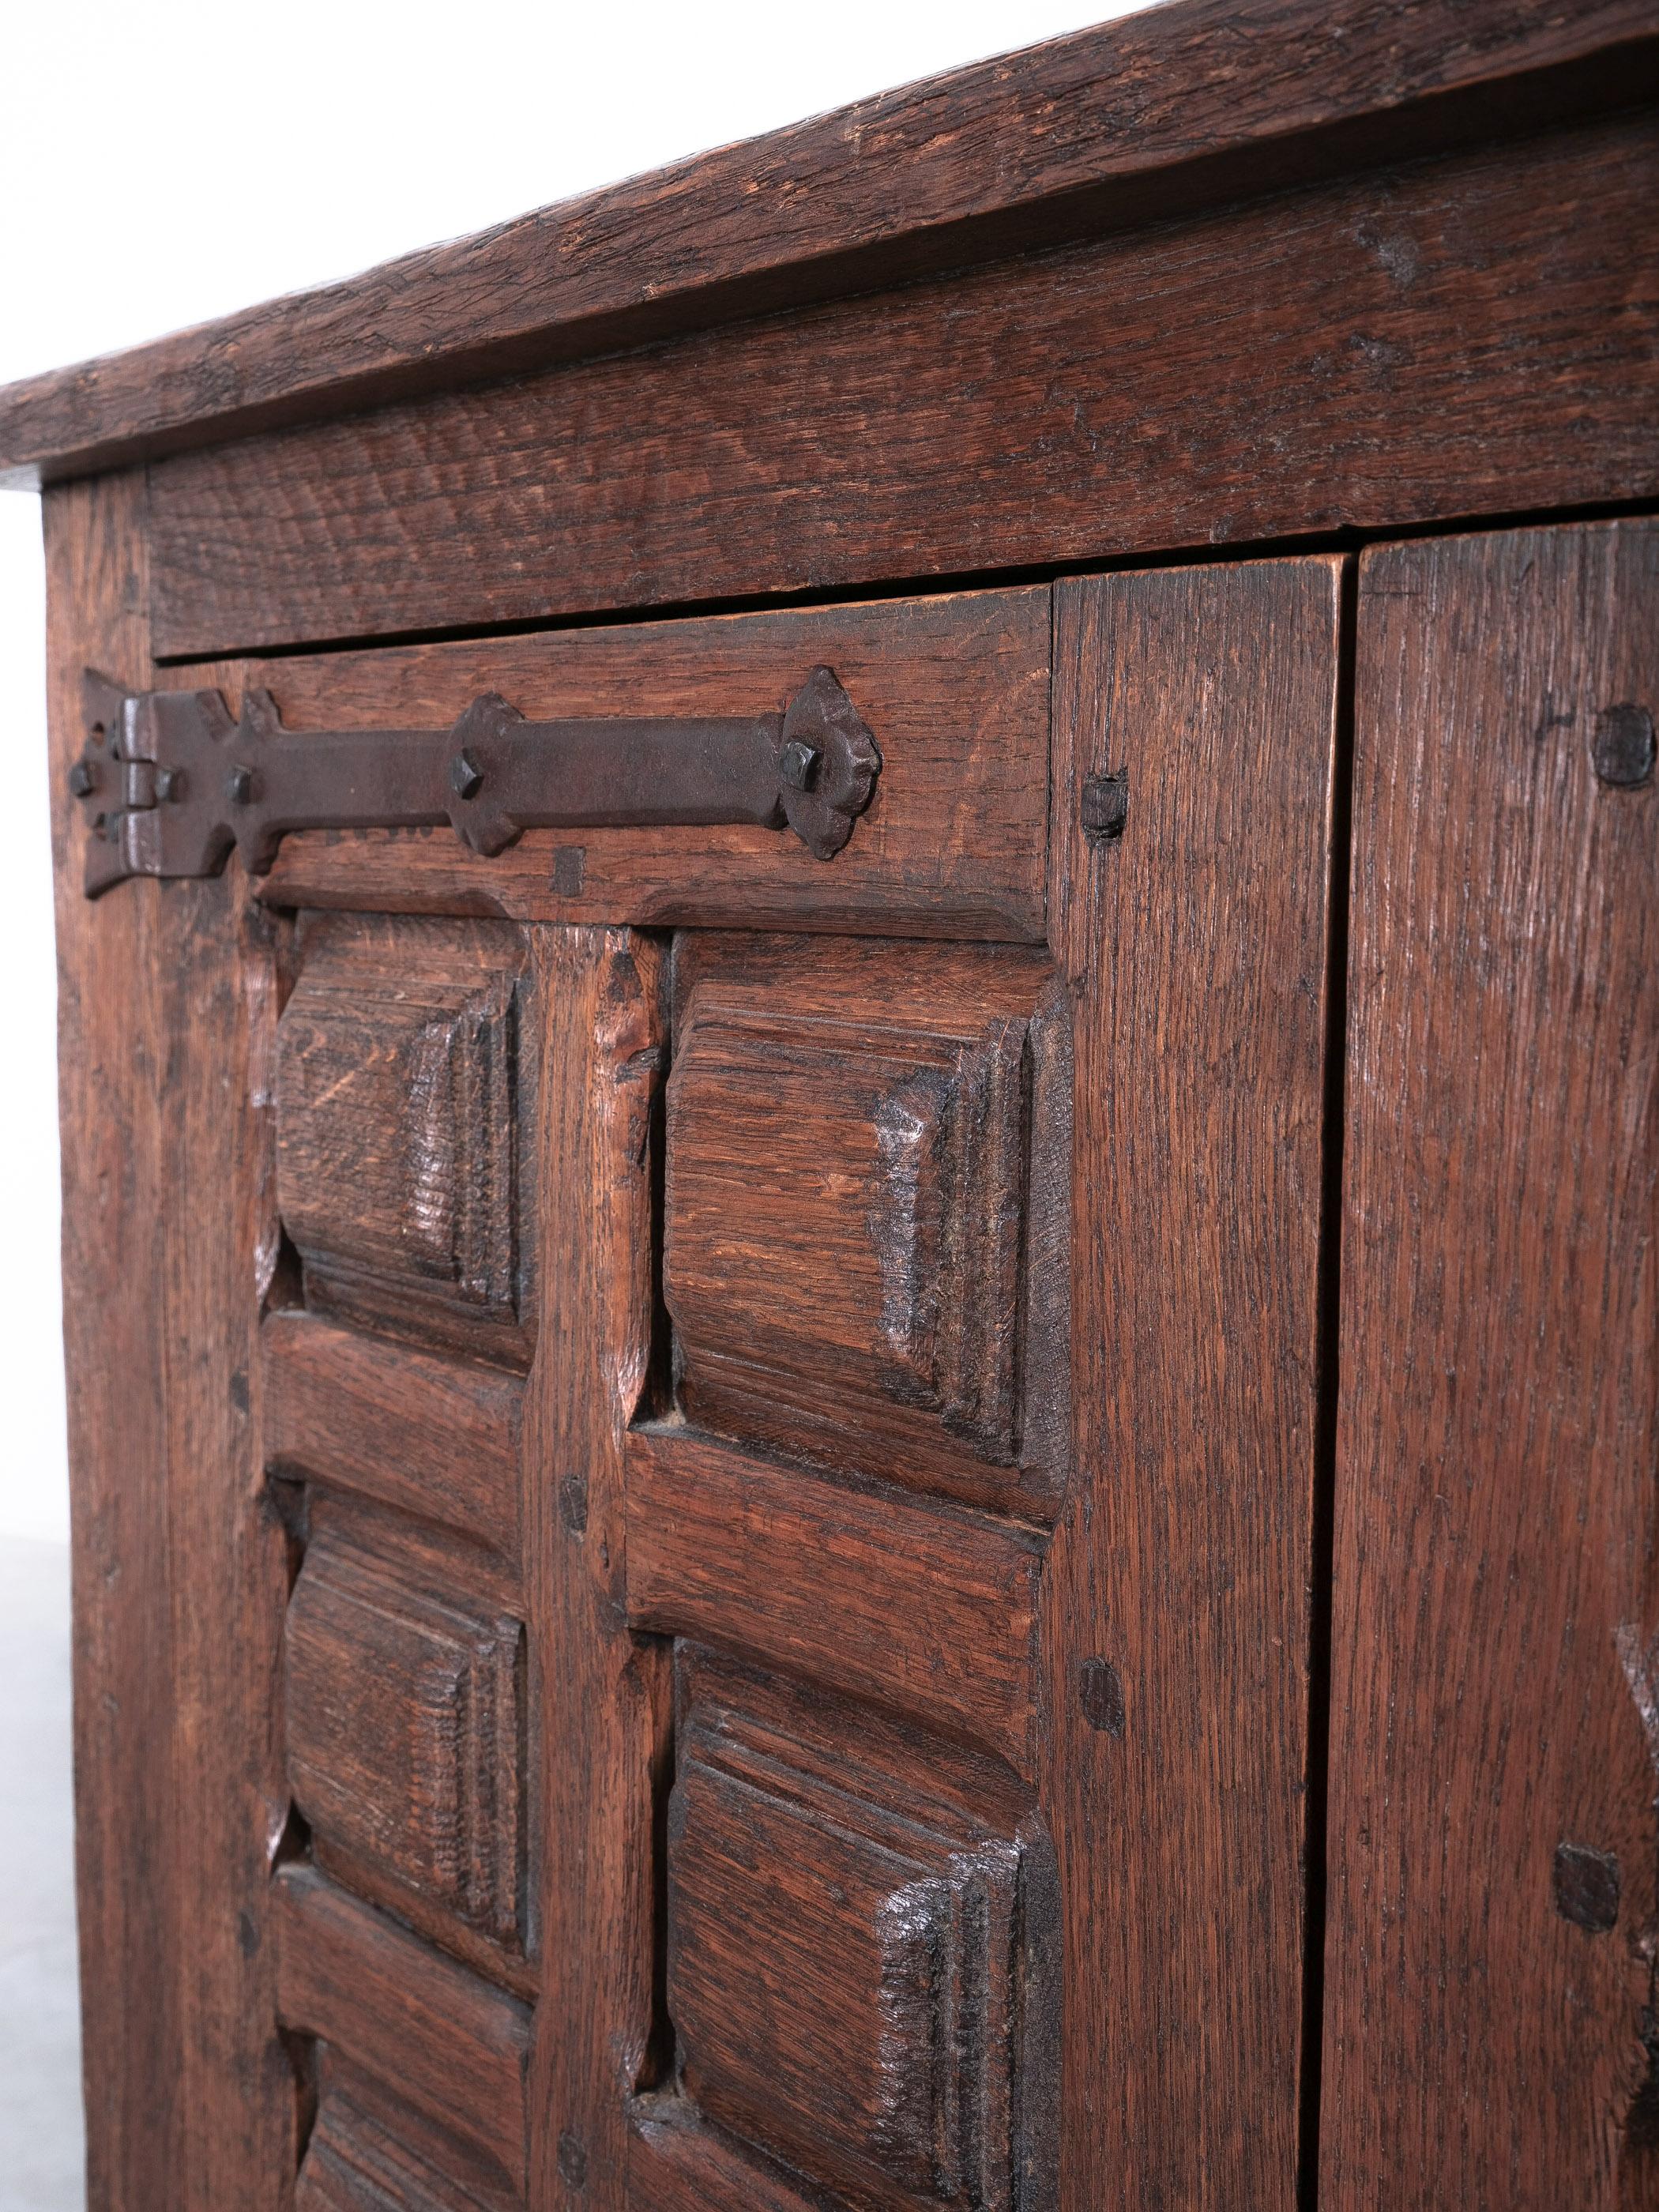 Brutalist Artisan Oak Cabinet or Sideboard With Carved Details, 1940 France For Sale 5